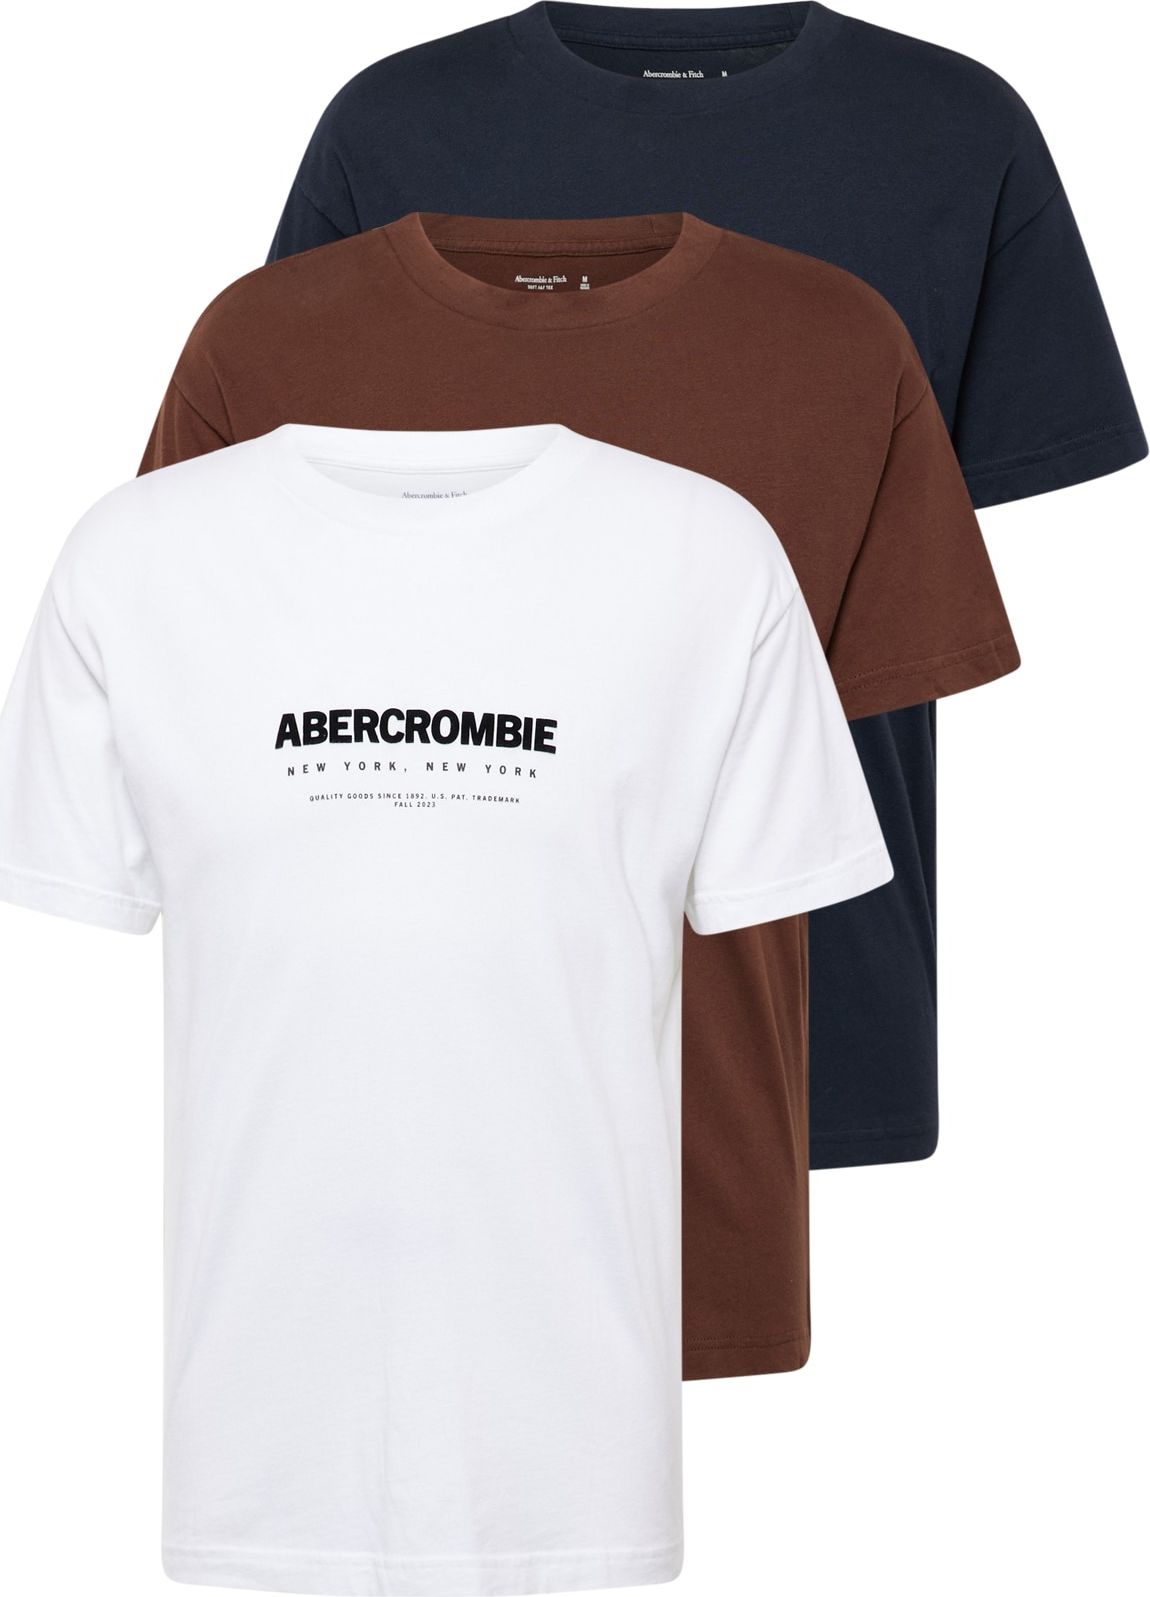 Tričko Abercrombie & Fitch námořnická modř / čokoládová / černá / bílá